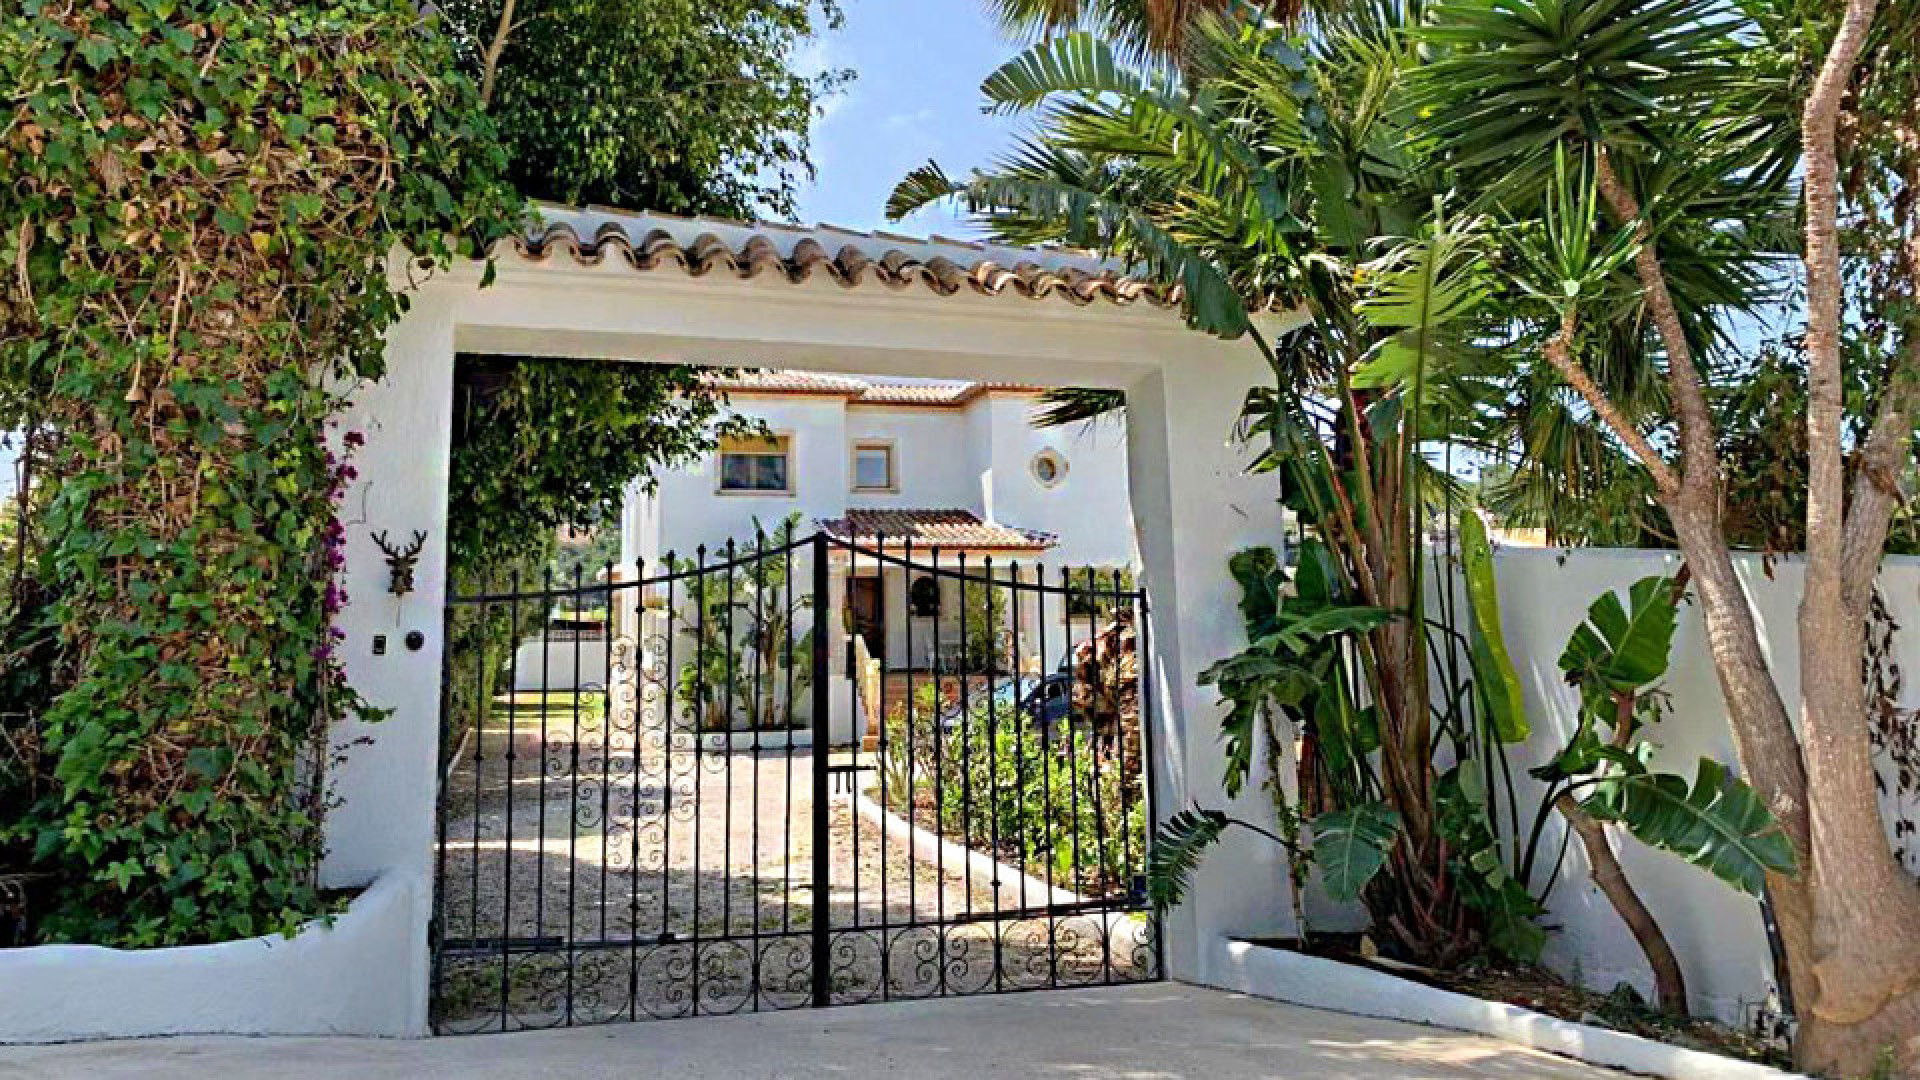 TE KOOP: Deze schitterende villa in Spanje op vijf minuten van zee en strand. 1